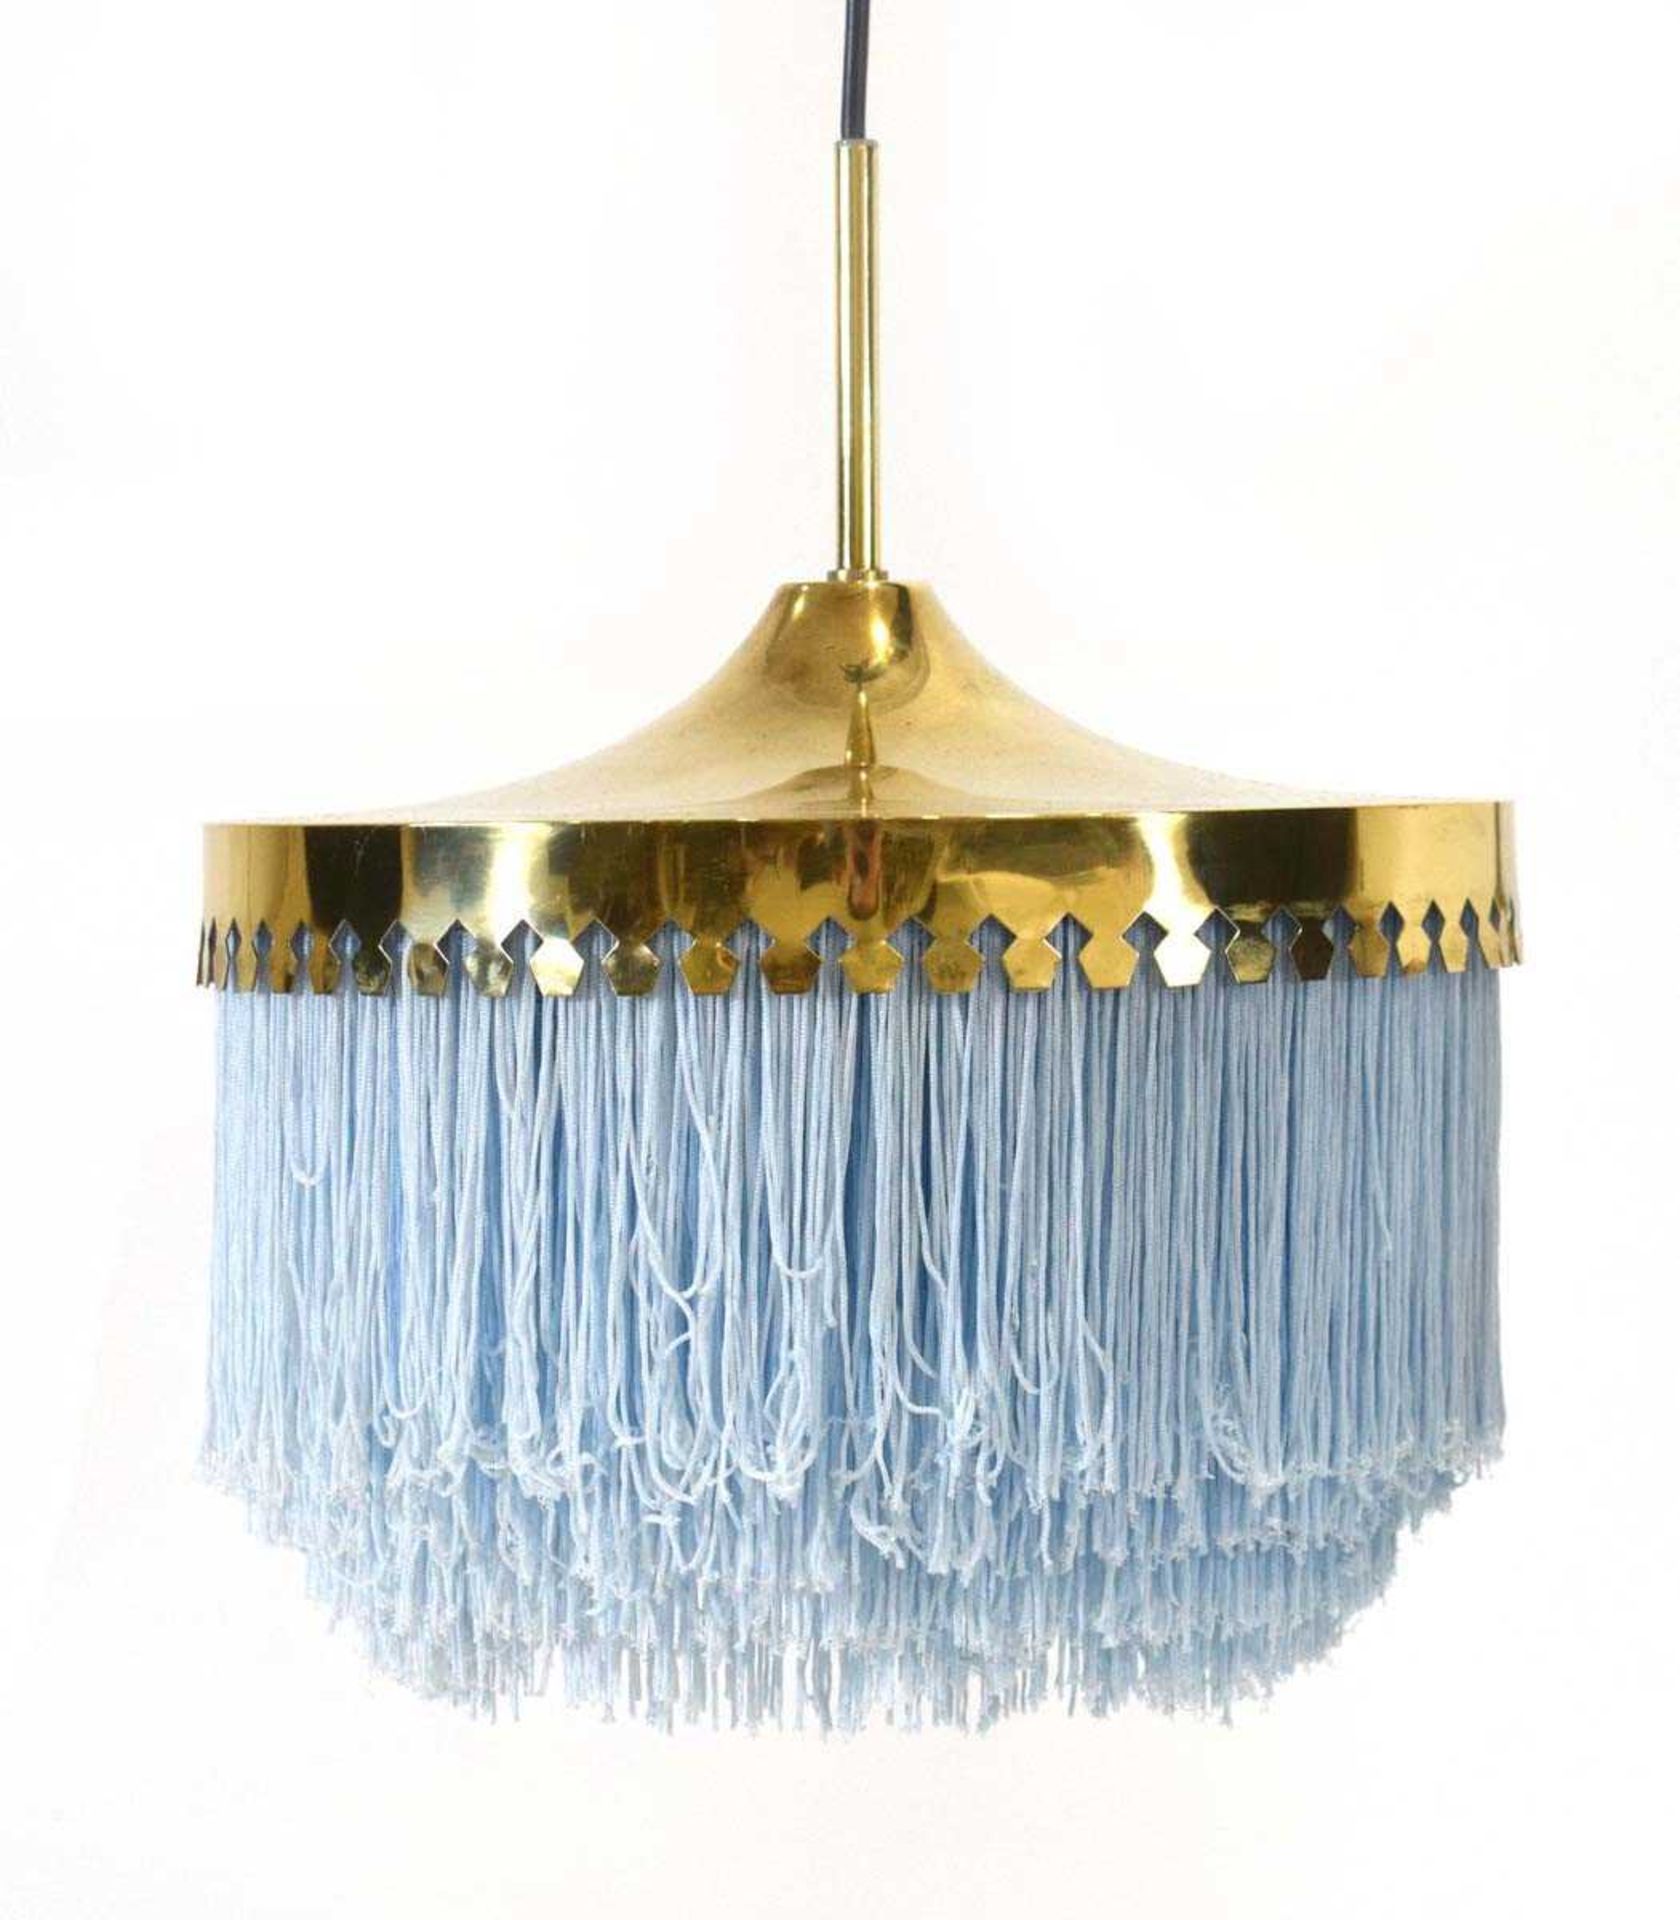 Hans-Agne Jakobsson for Markaryd, a brass ceiling light with blue tassel fringe, Model T601/M, d. 28